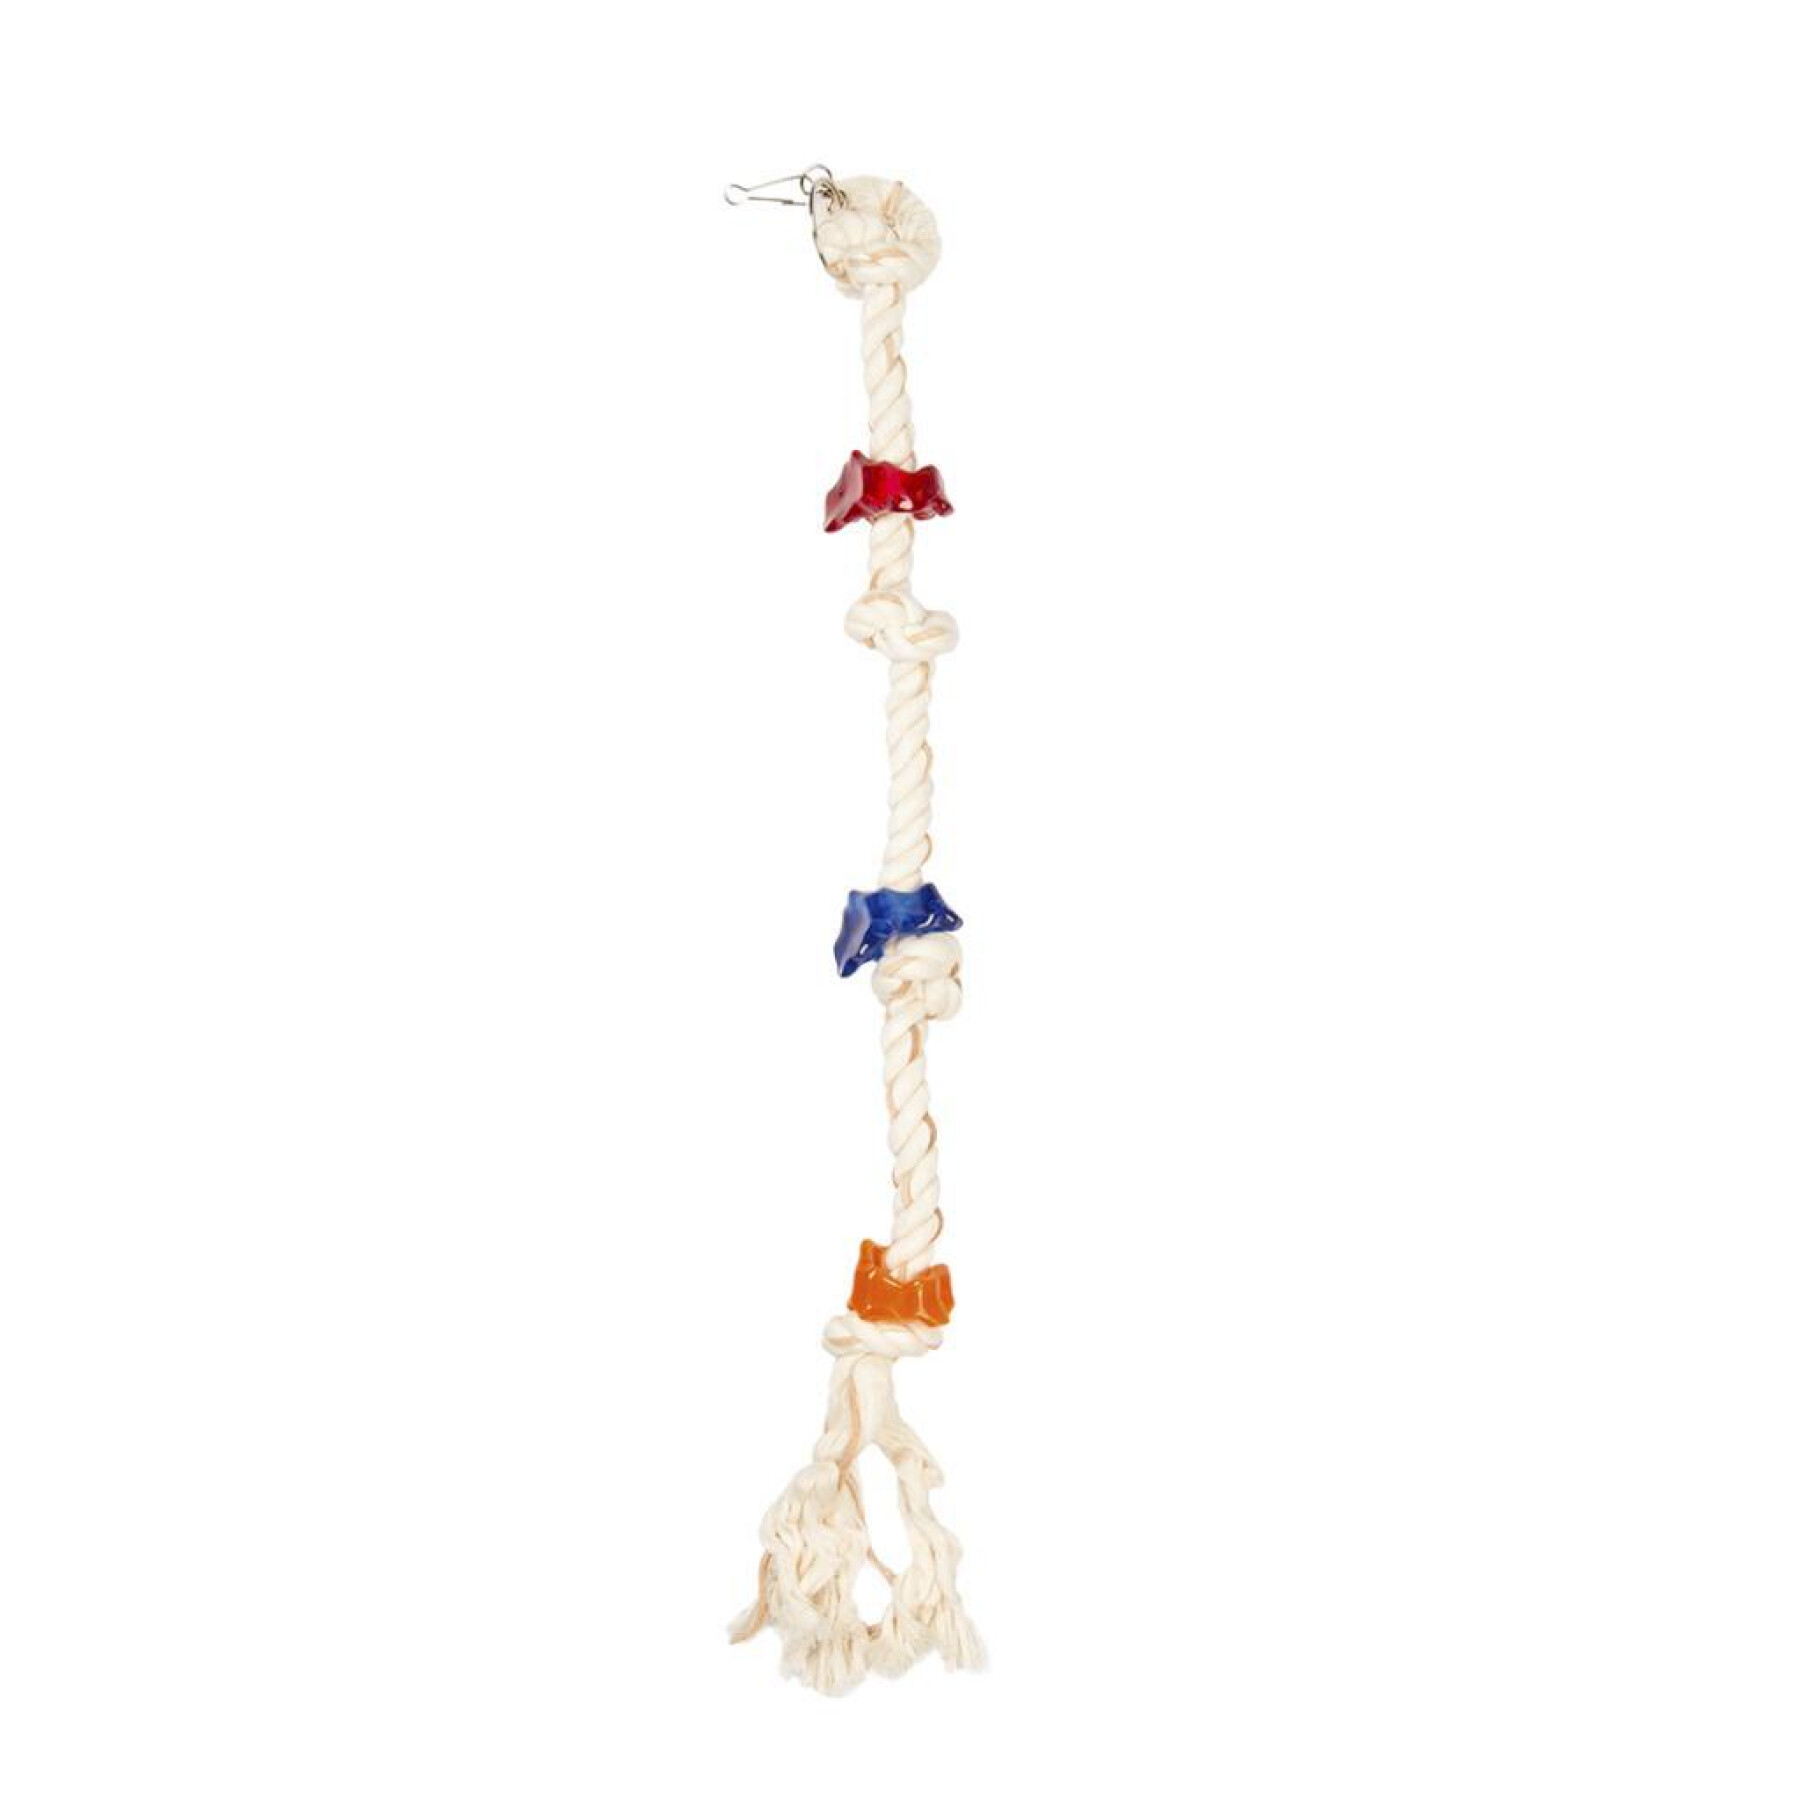 Vogelspielzeug aus Seil mit 6 Knoten und Acryl Duvoplus